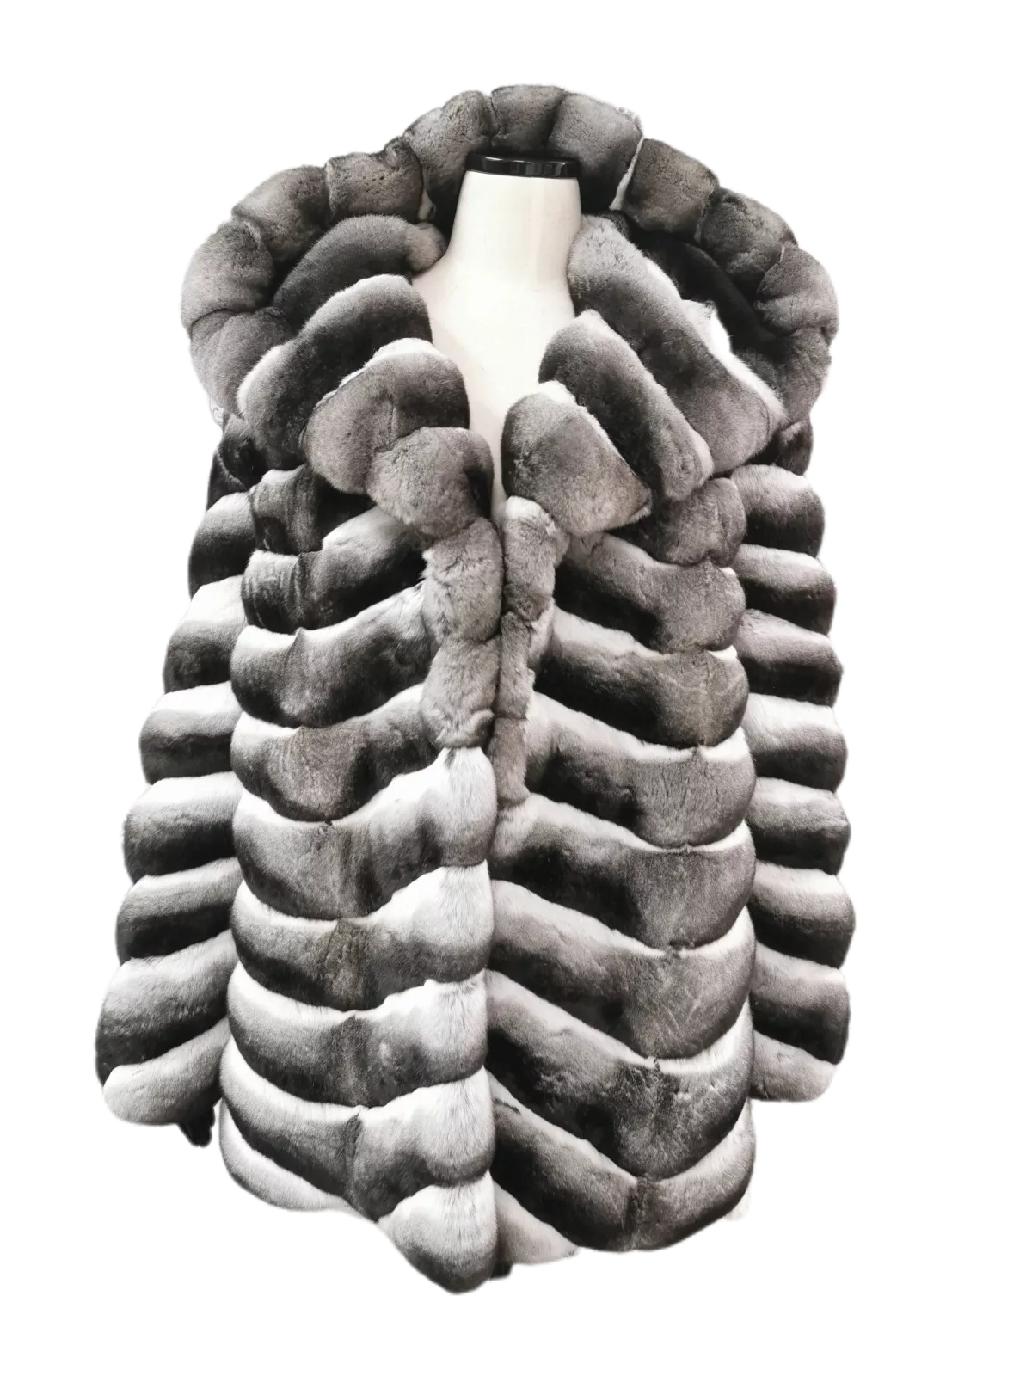 chinchilla coat